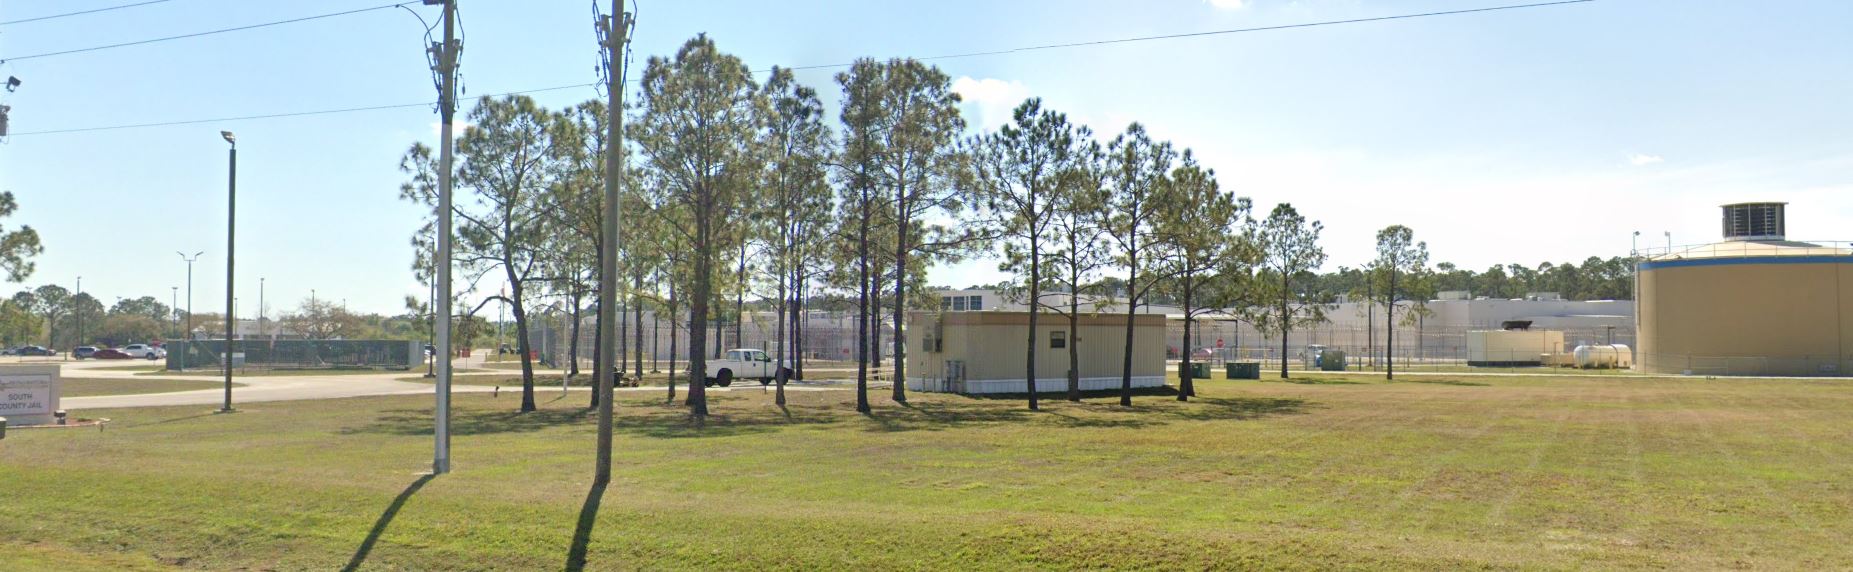 Photos Polk County South Jail 3